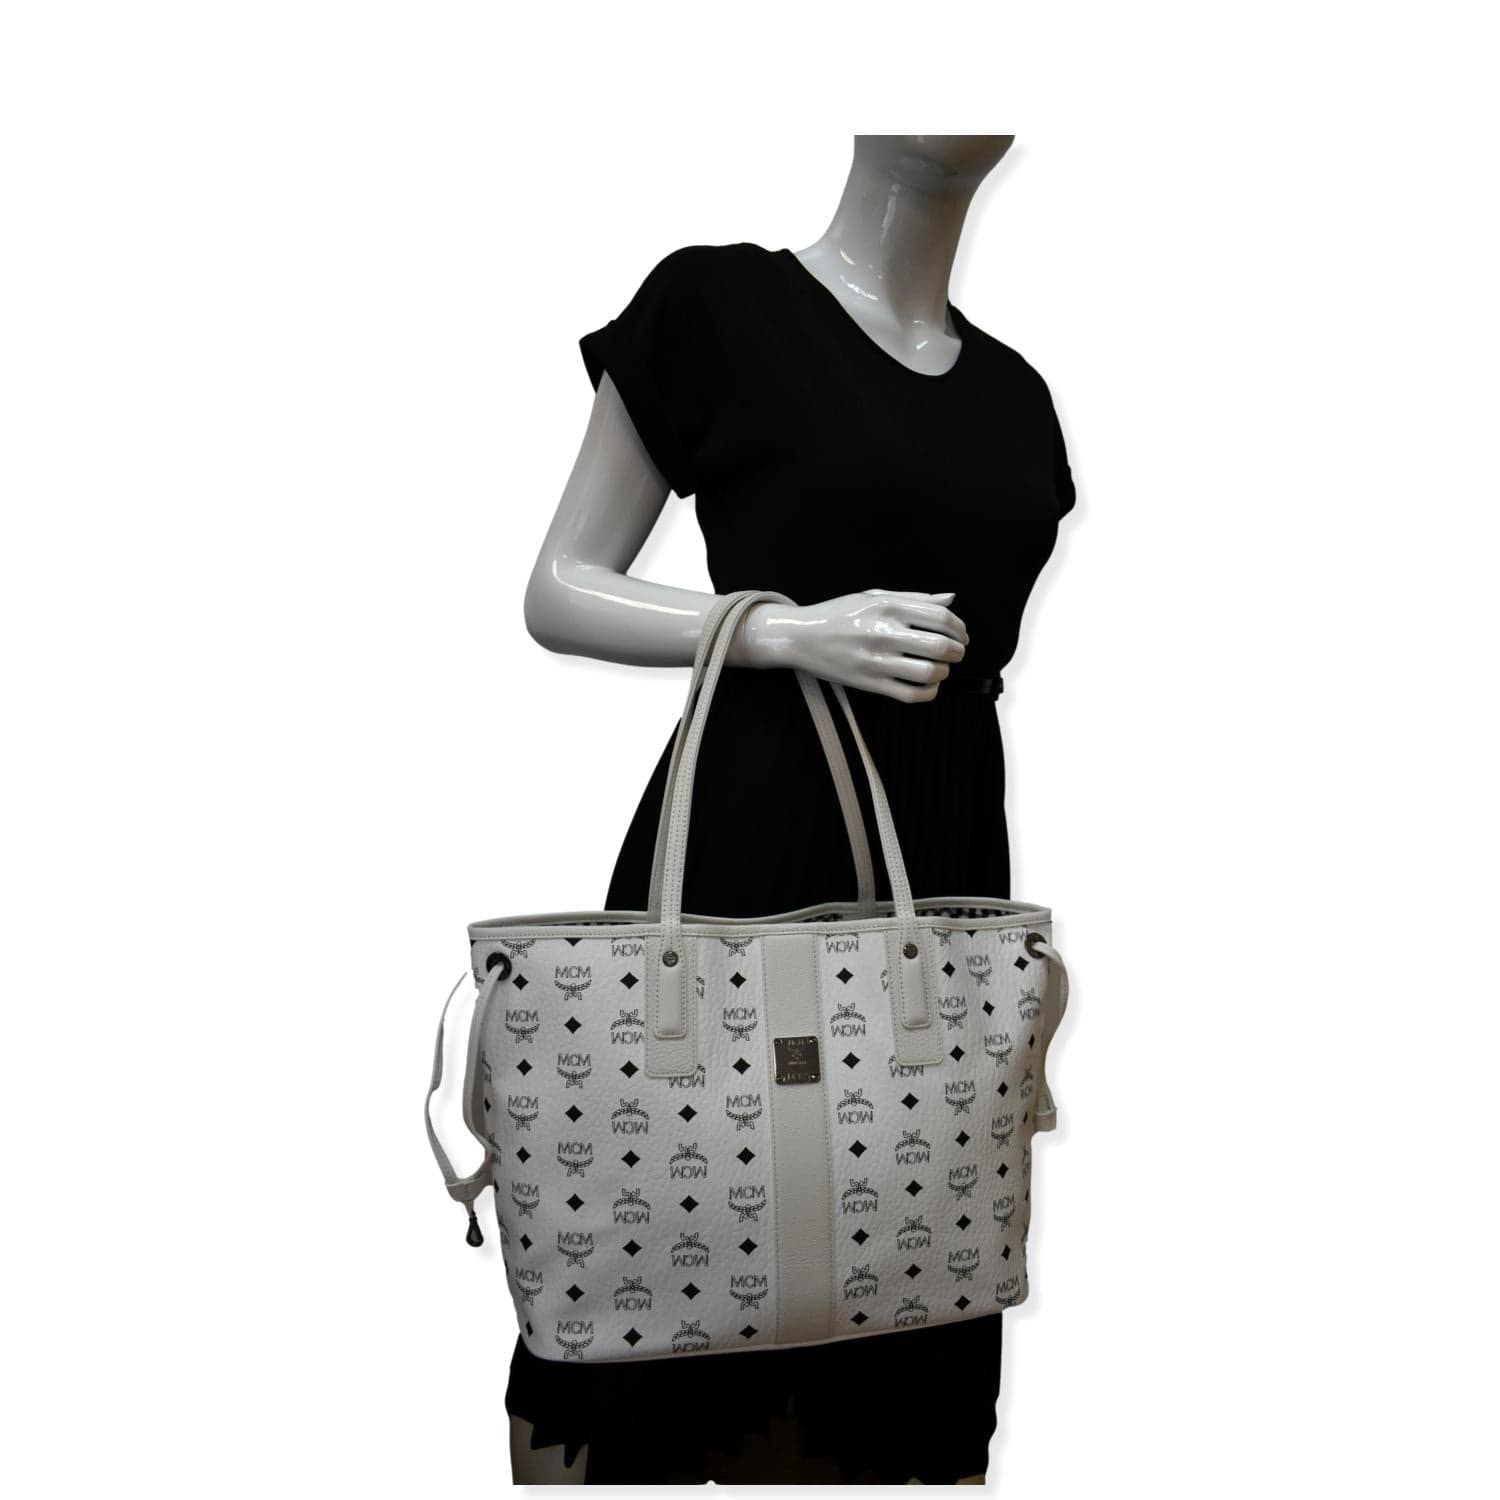 MCM Liz Medium Reversible Shopper Tote Bag